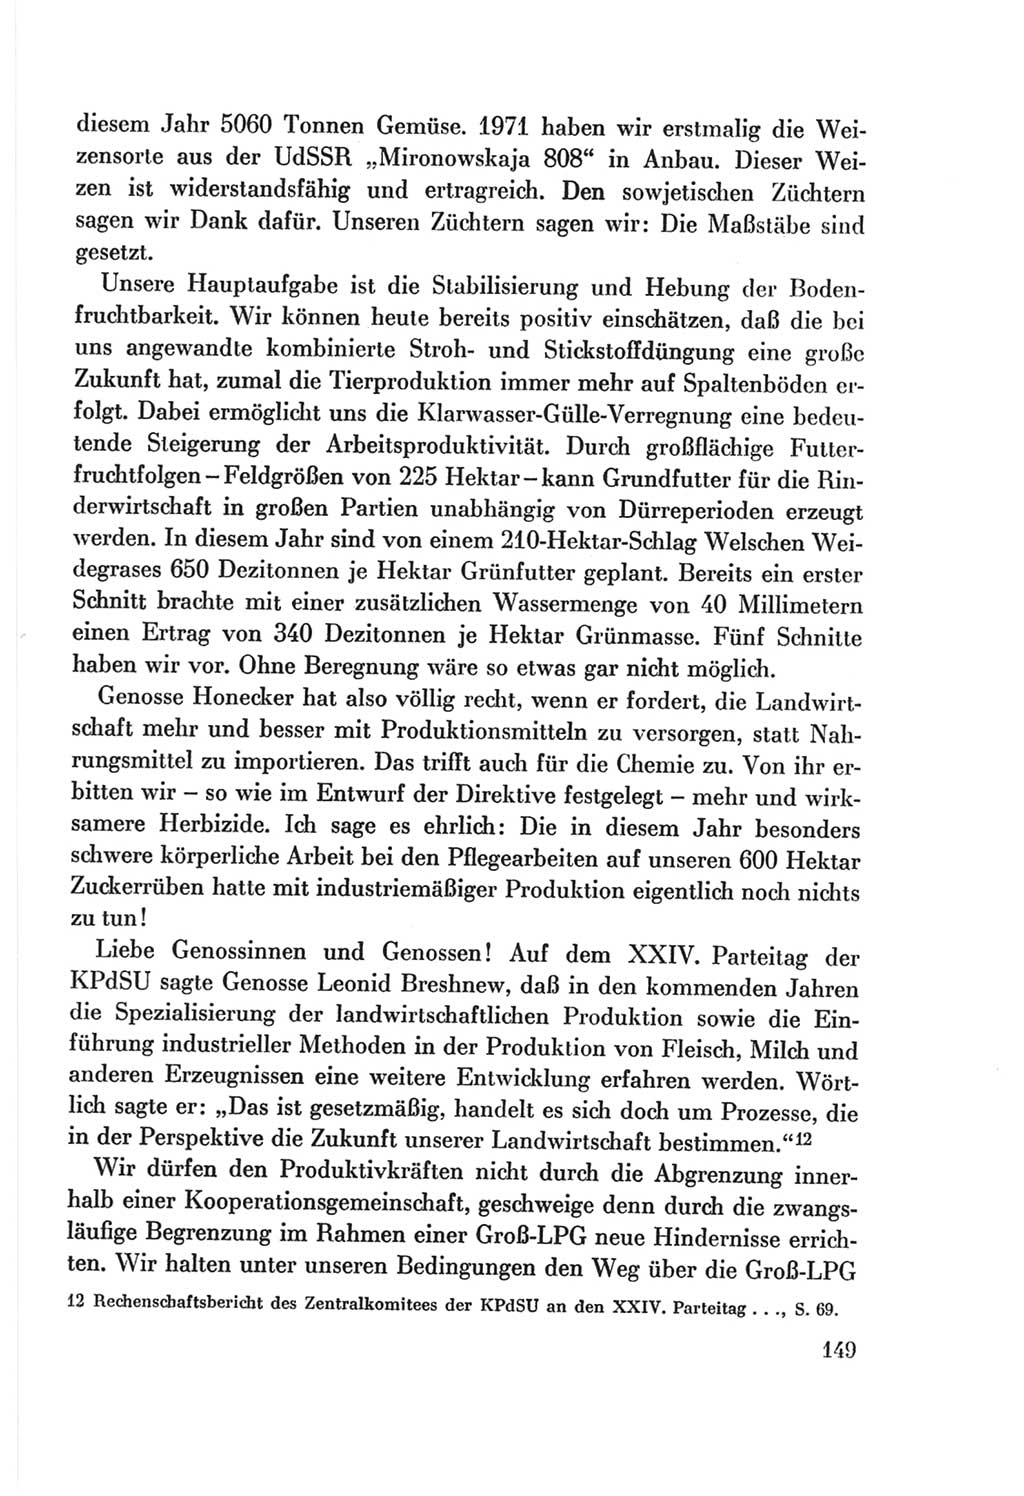 Protokoll der Verhandlungen des Ⅷ. Parteitages der Sozialistischen Einheitspartei Deutschlands (SED) [Deutsche Demokratische Republik (DDR)] 1971, Band 1, Seite 149 (Prot. Verh. Ⅷ. PT SED DDR 1971, Bd. 1, S. 149)